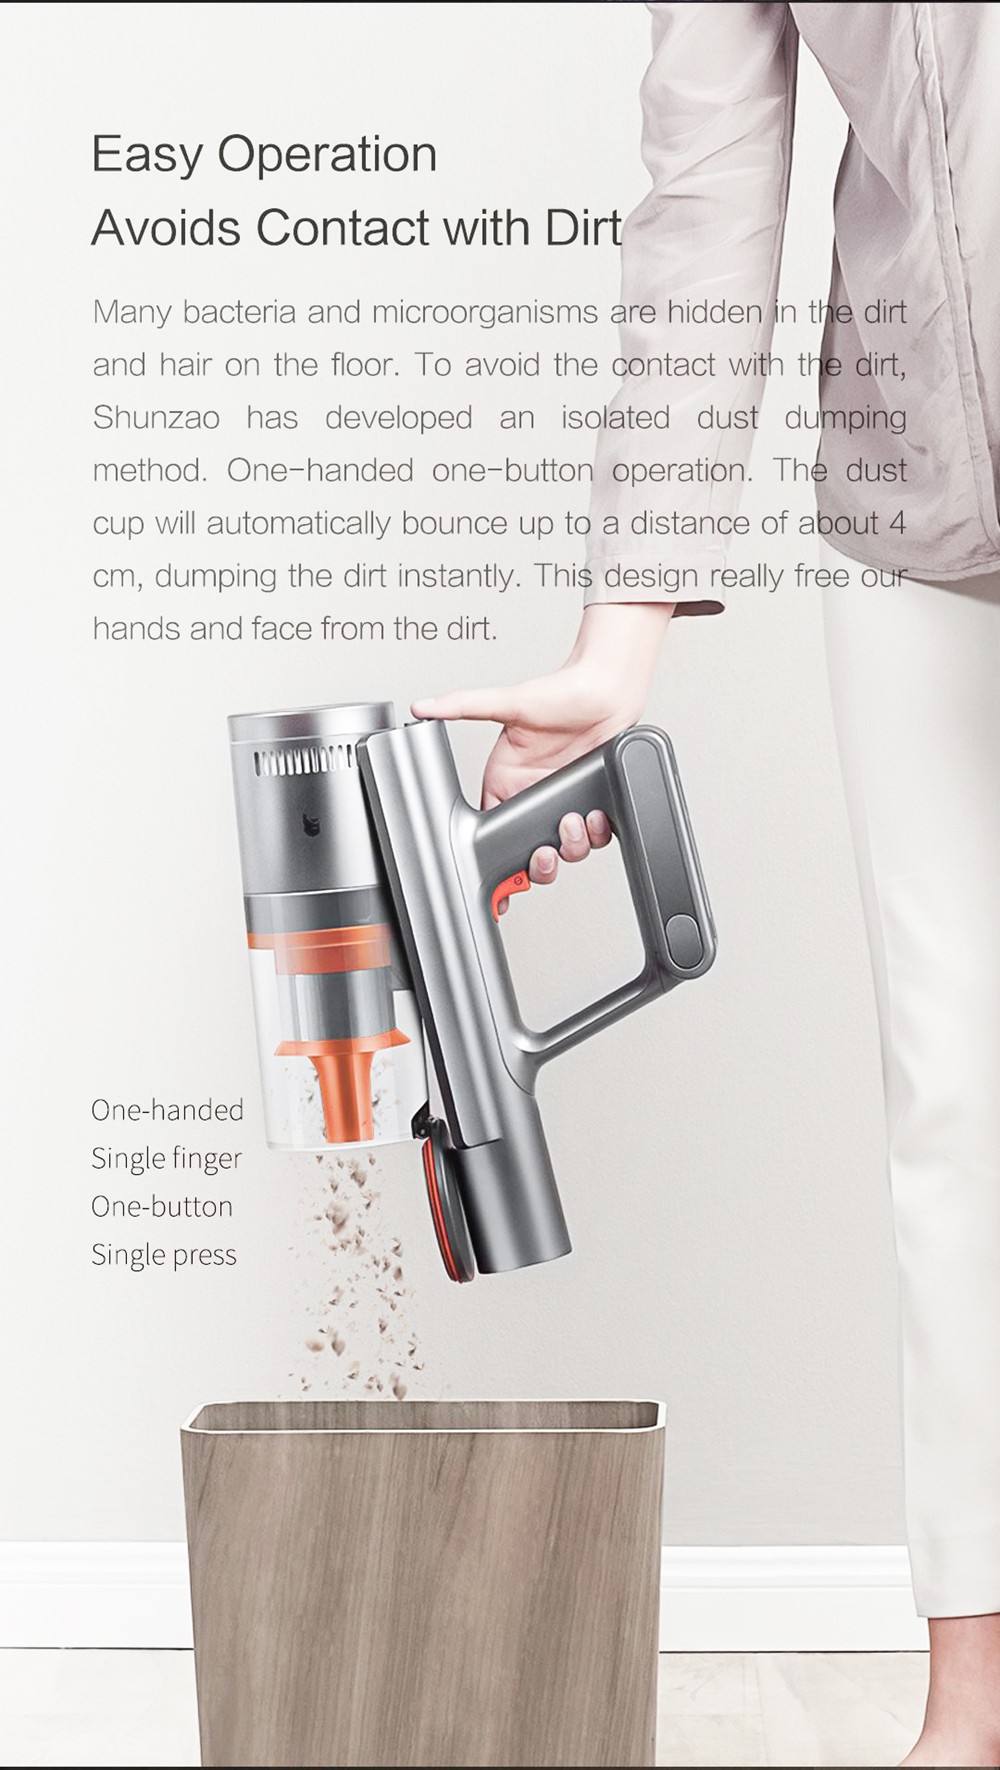 Shunzao Z11 MAX Hand-held Cordless Vacuum Cleaner 150AW Suction Power 26KPA 125000 RPM 2500mAh - Orange